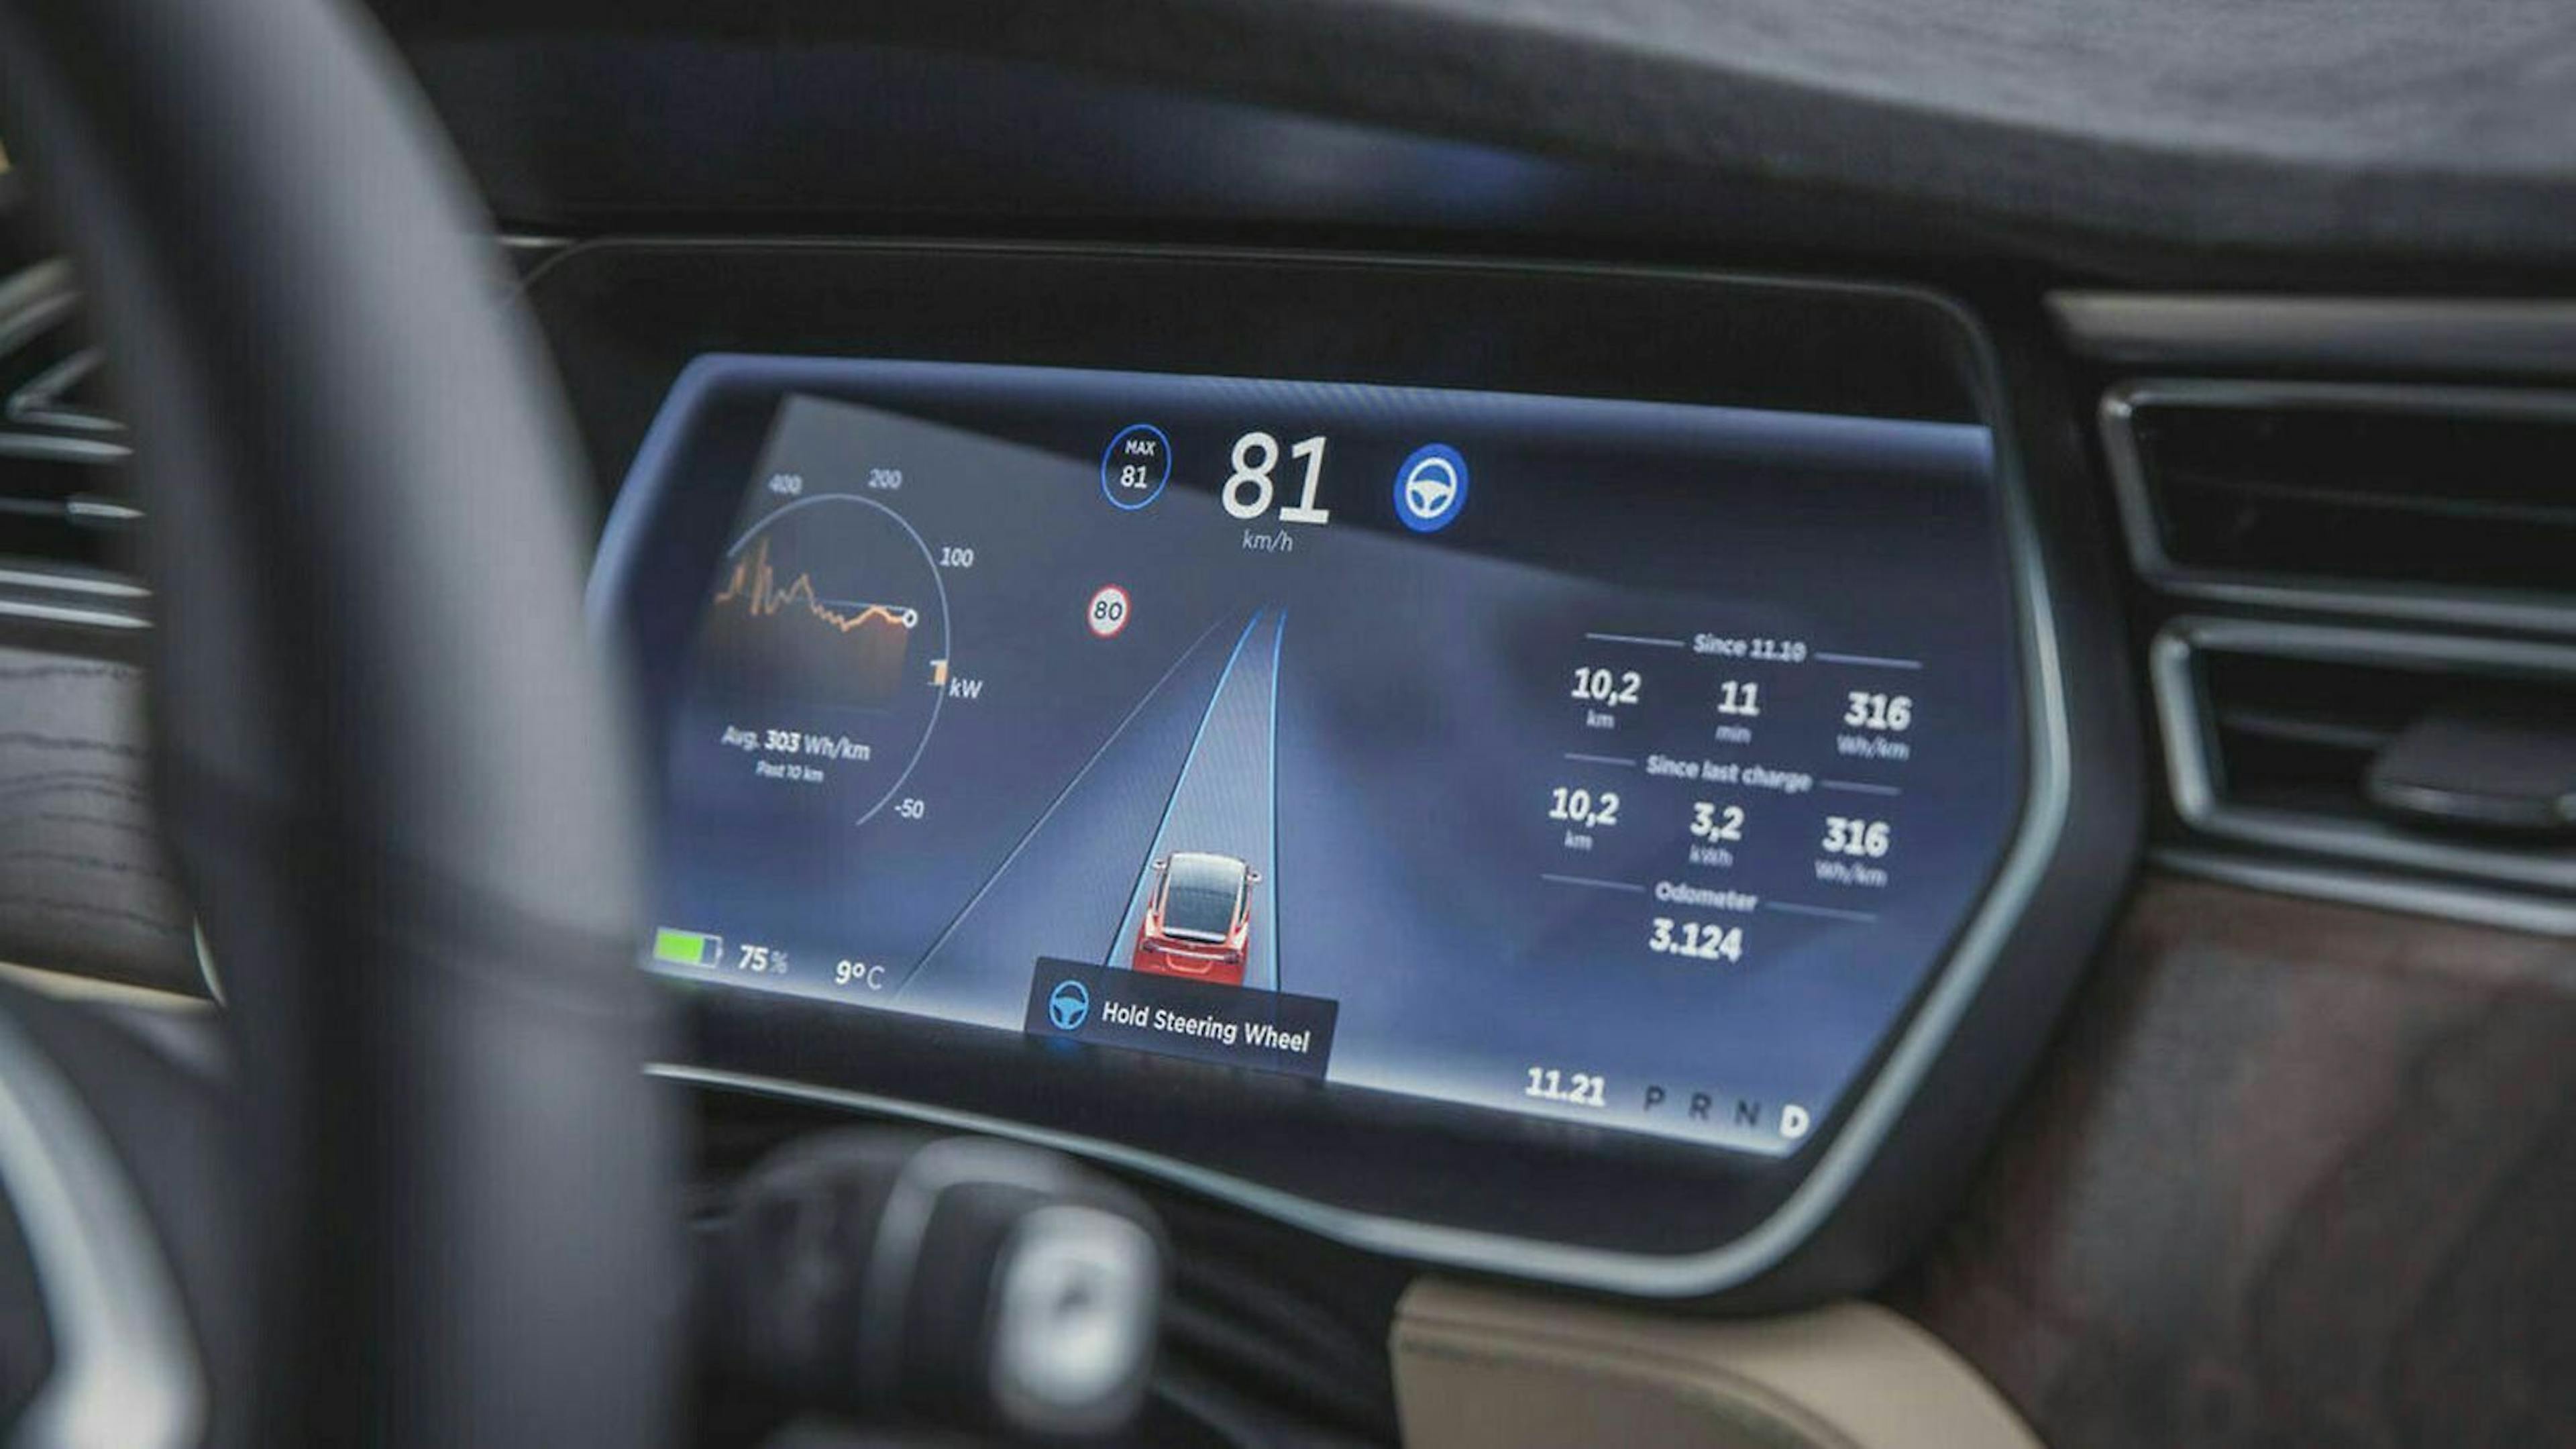 Tesla bietet in seinen Modellen einen "Autopilot", der teilautonomes Fahren ermöglicht